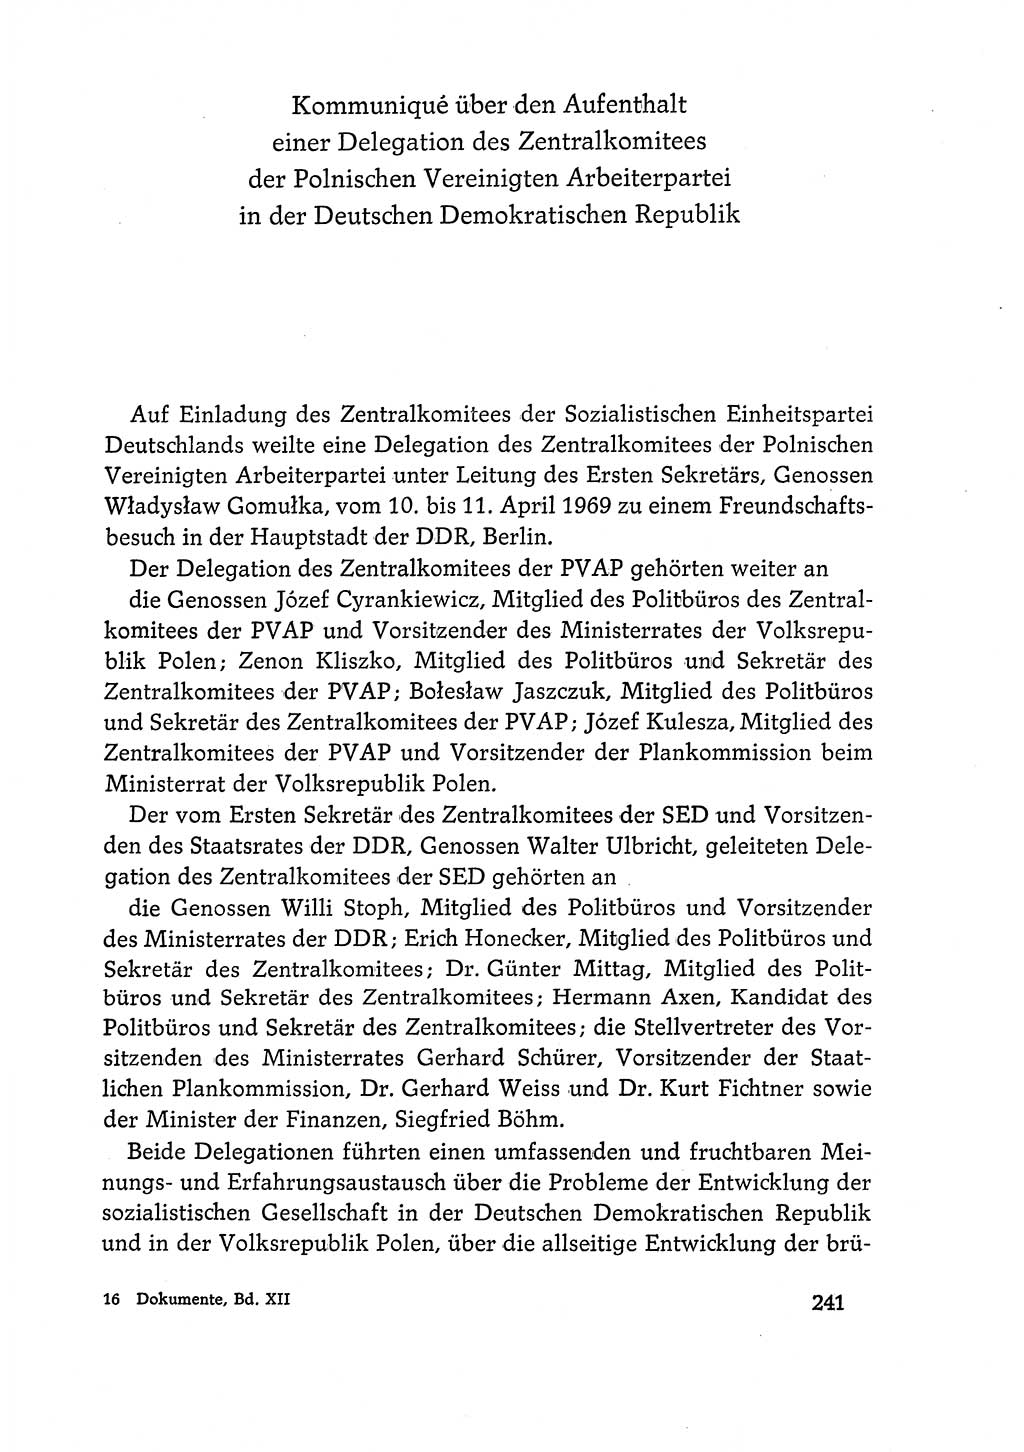 Dokumente der Sozialistischen Einheitspartei Deutschlands (SED) [Deutsche Demokratische Republik (DDR)] 1968-1969, Seite 241 (Dok. SED DDR 1968-1969, S. 241)